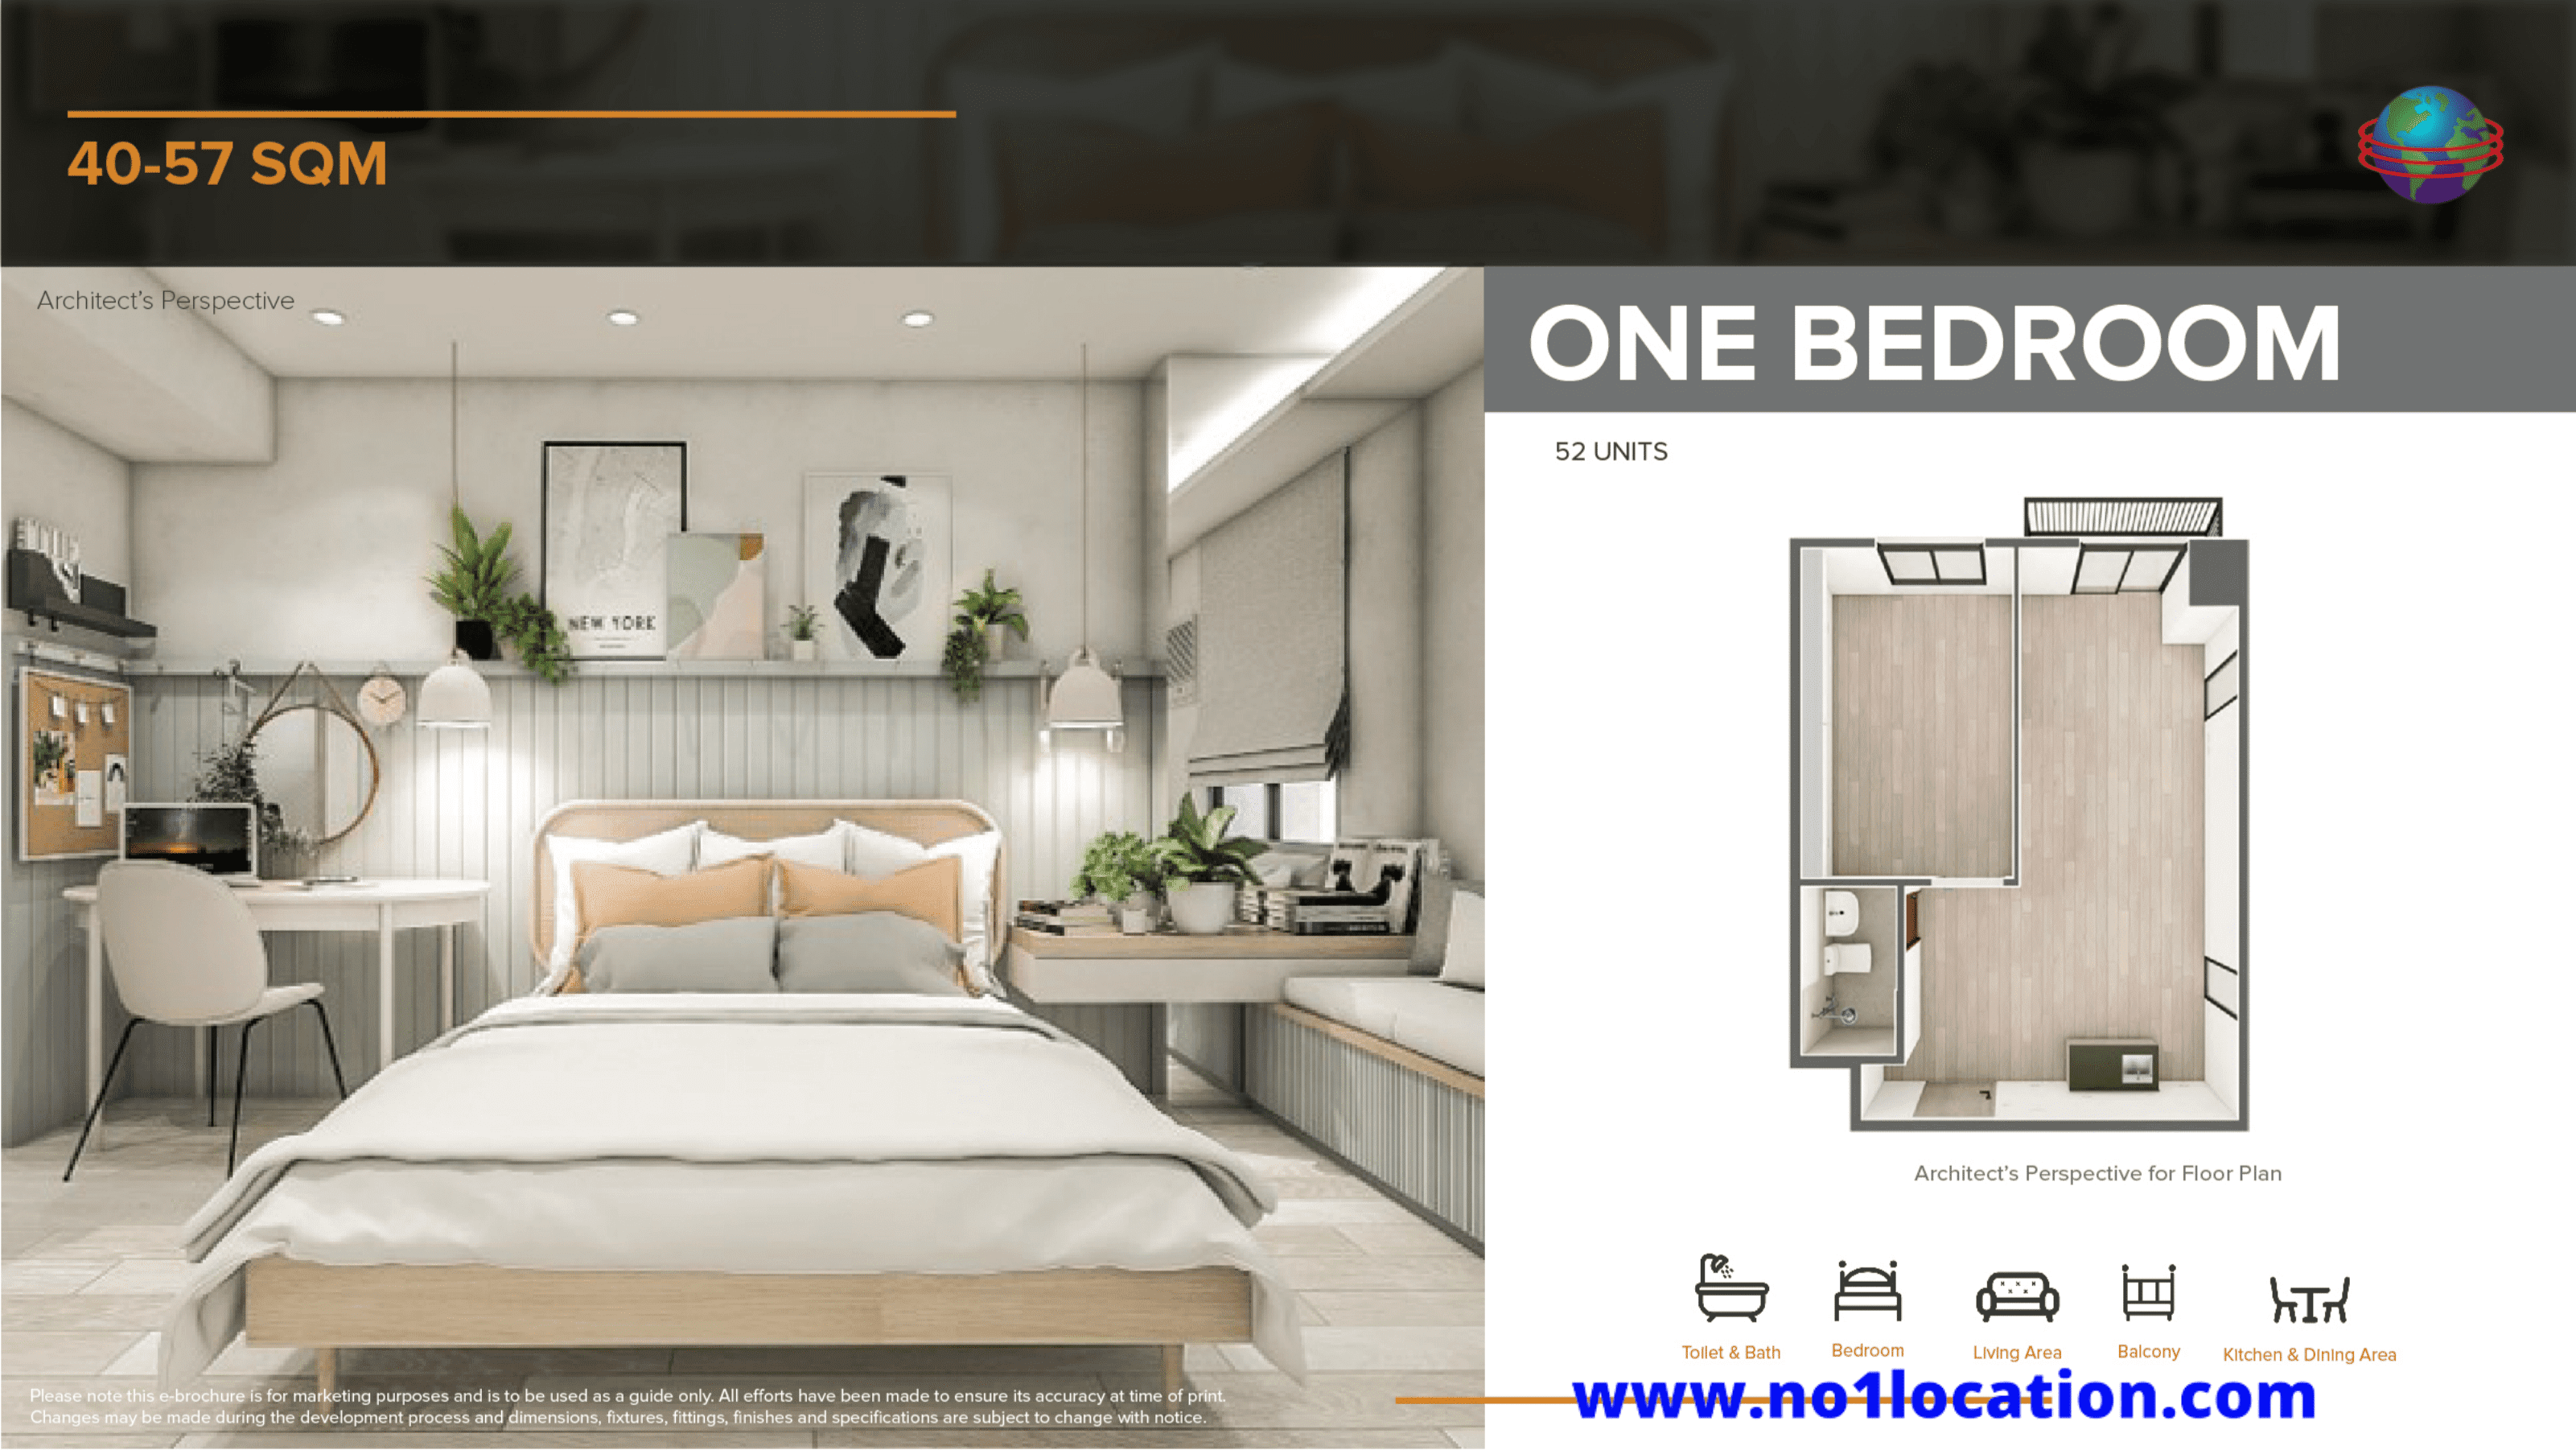 The Median Flats 1 bedroom unit